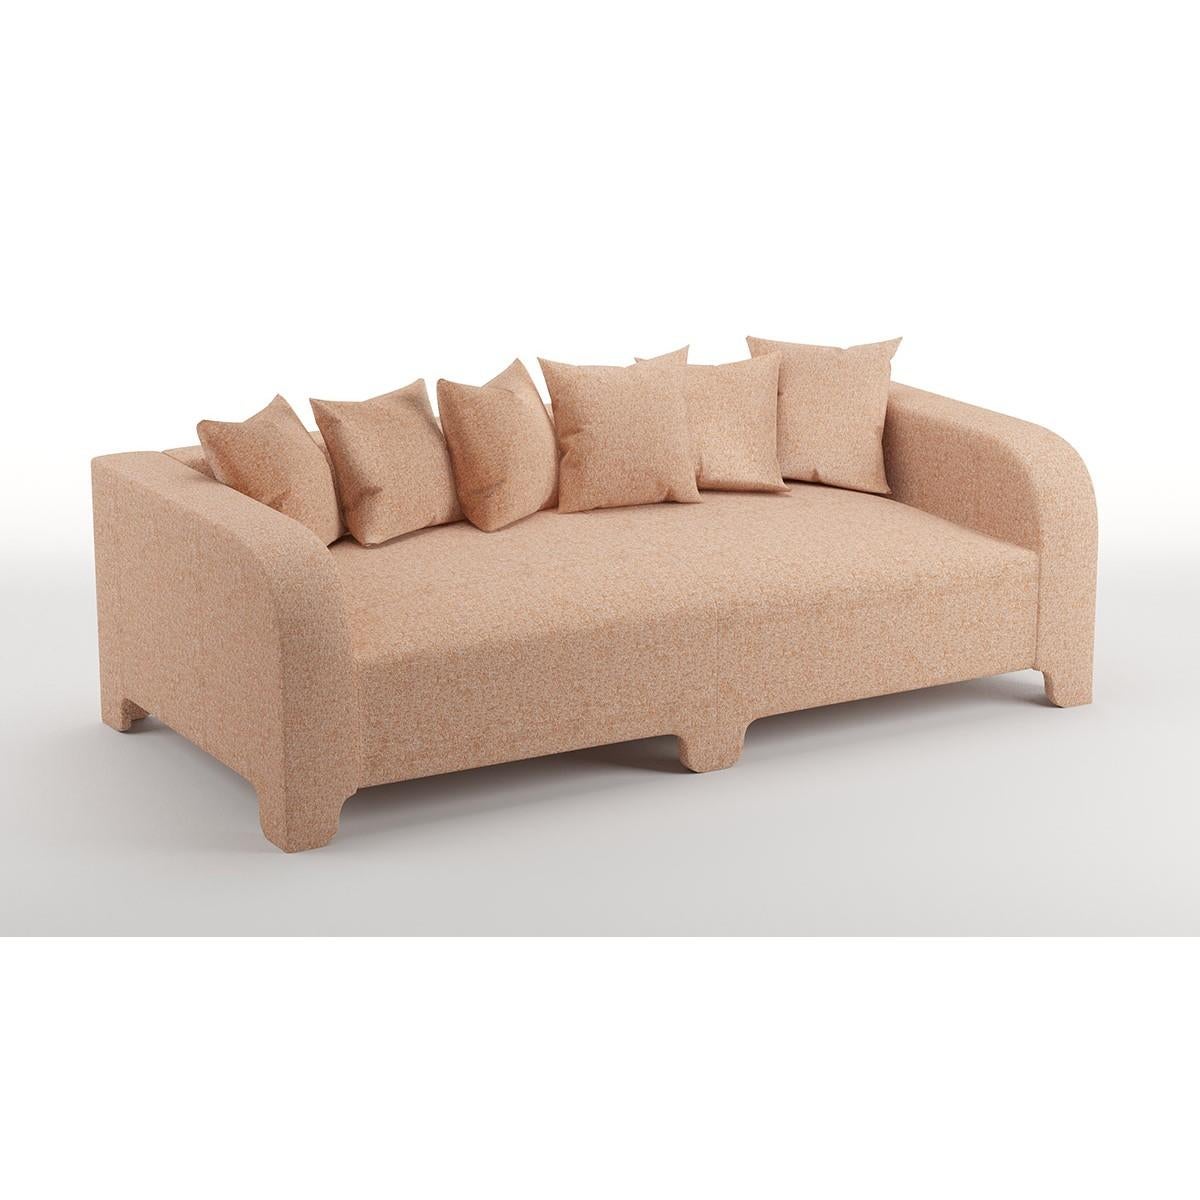 Popus Editions Graziella 3 Seater Sofa in Terracotta London Linen Fabric